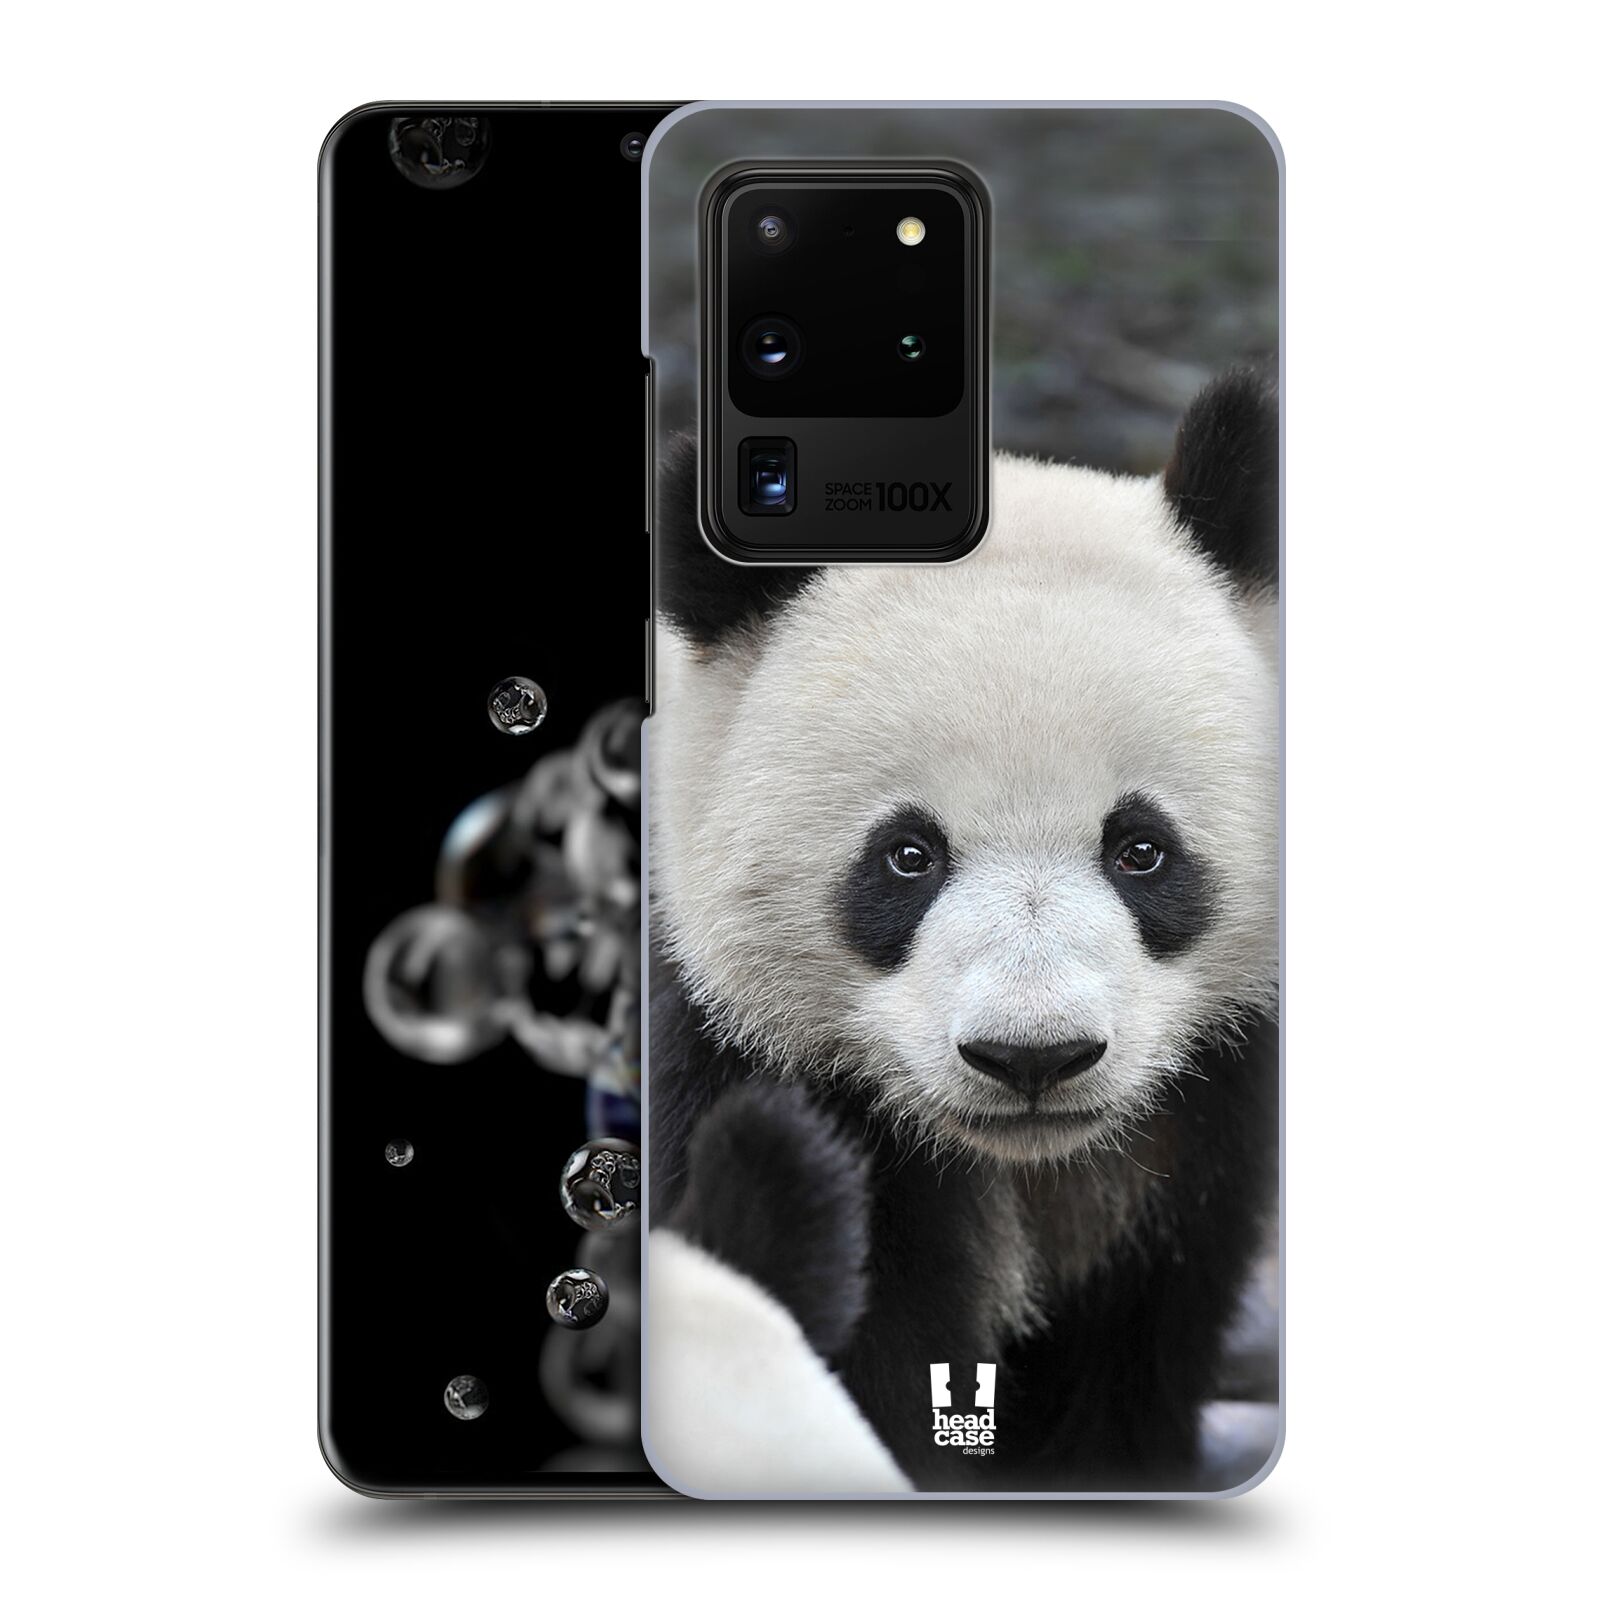 Zadní obal pro mobil Samsung Galaxy S20 ULTRA - HEAD CASE - Svět zvířat medvěd panda